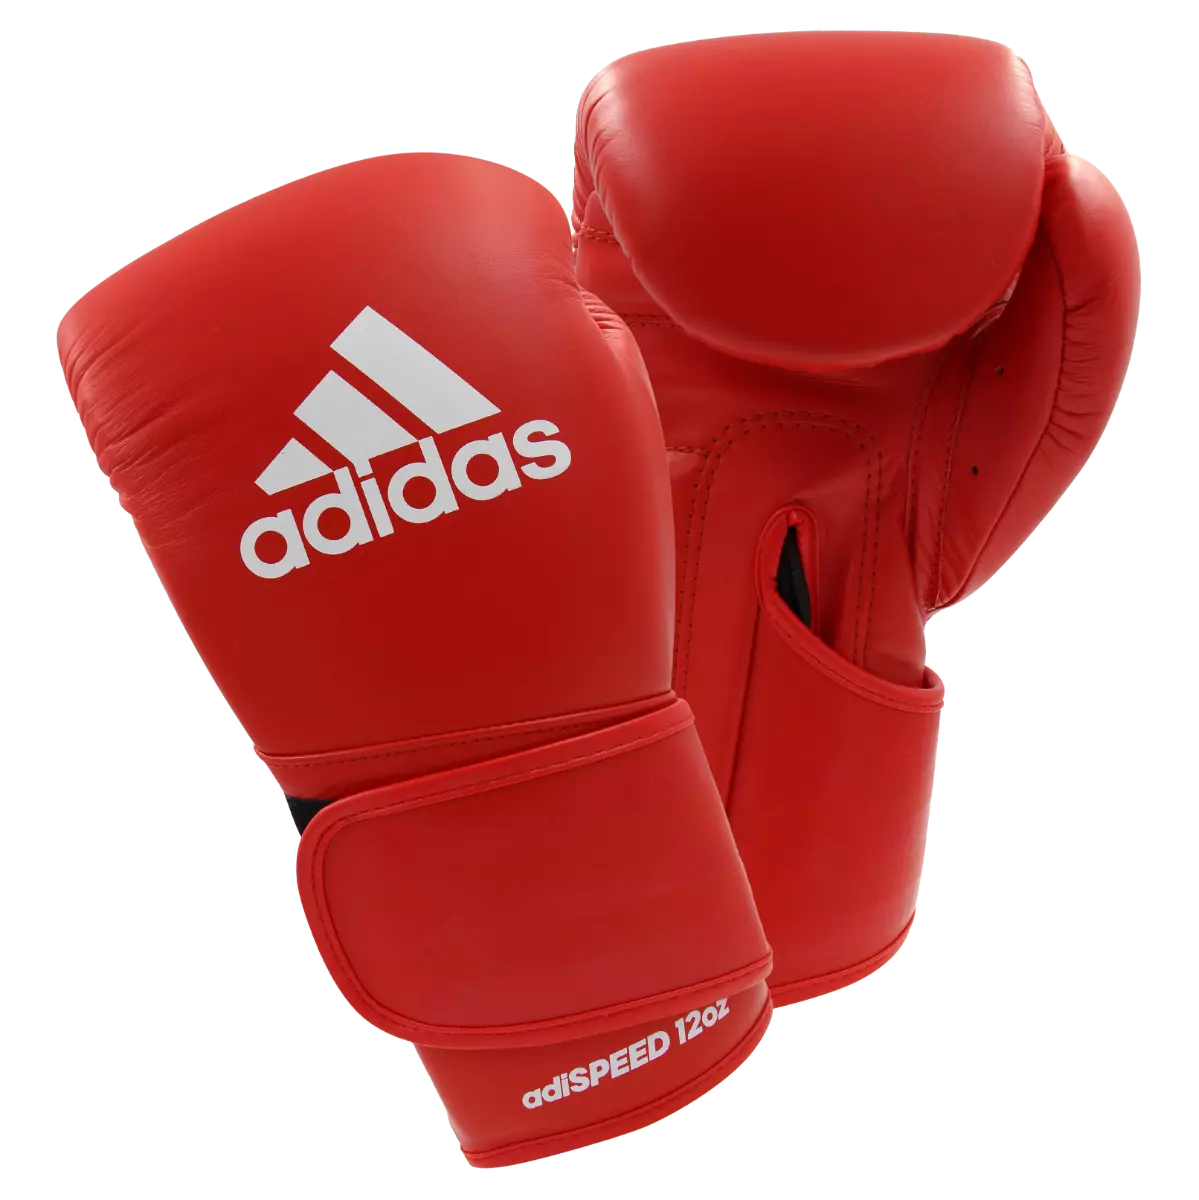 adidas Adispeed Pro Leather Boxing Gloves - Budo Online